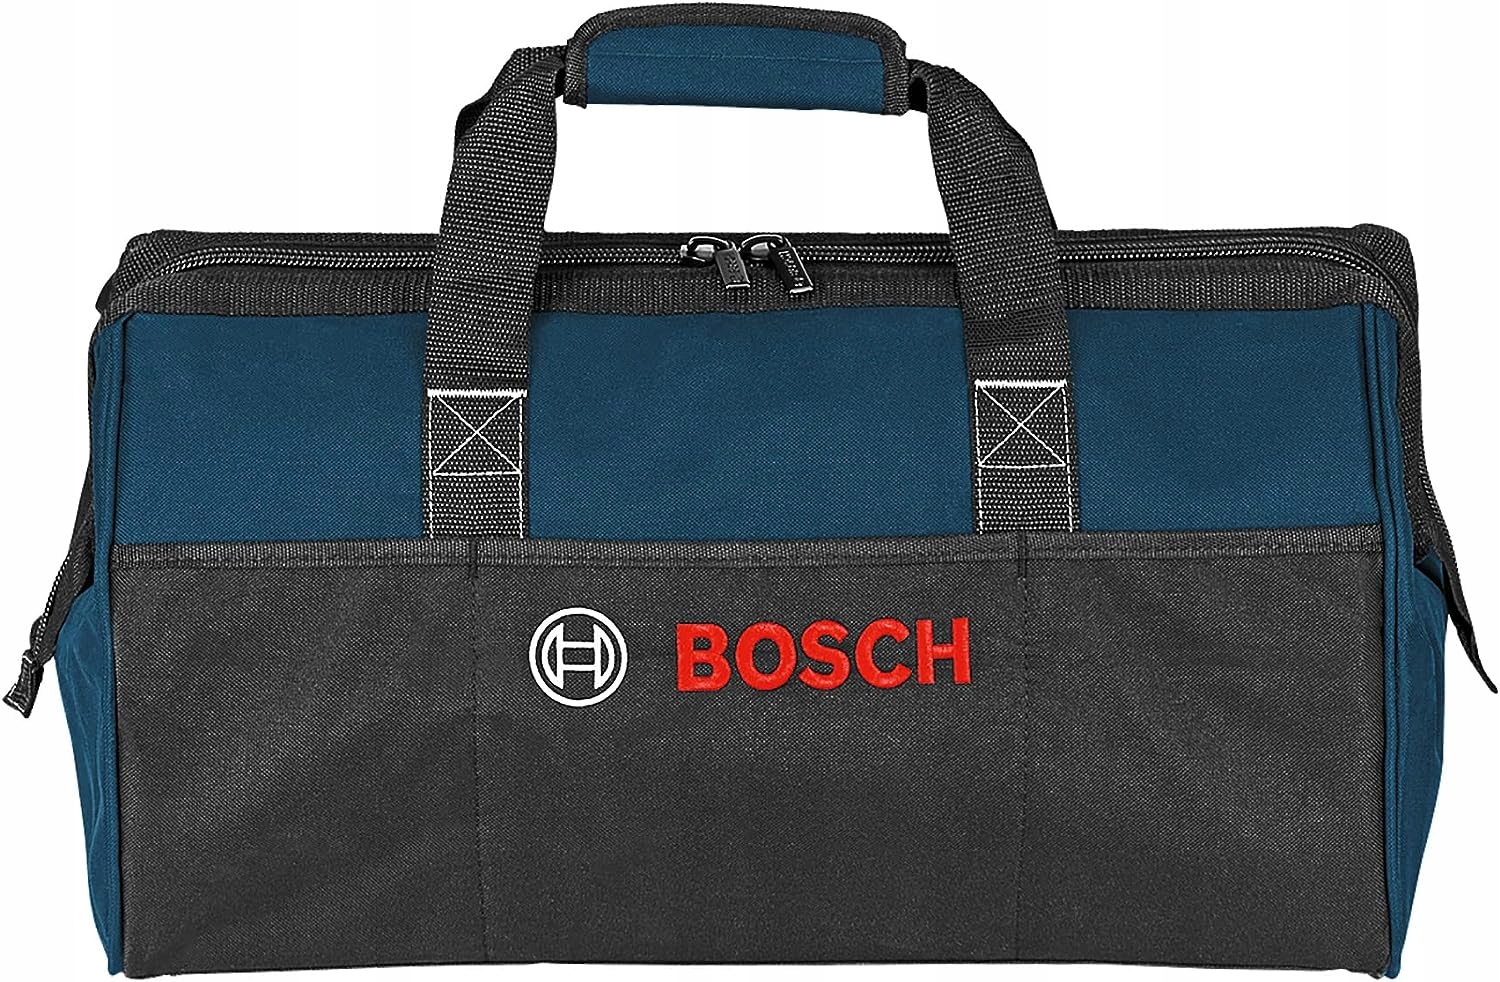 Bosch купить авито. Сумка для инструментов Bosch 1619a003bk. Сумка Bosch 1619bz010. Сумка Bosch professional t Bag Minipack. Сумка Bosch 1619bz010 дно.